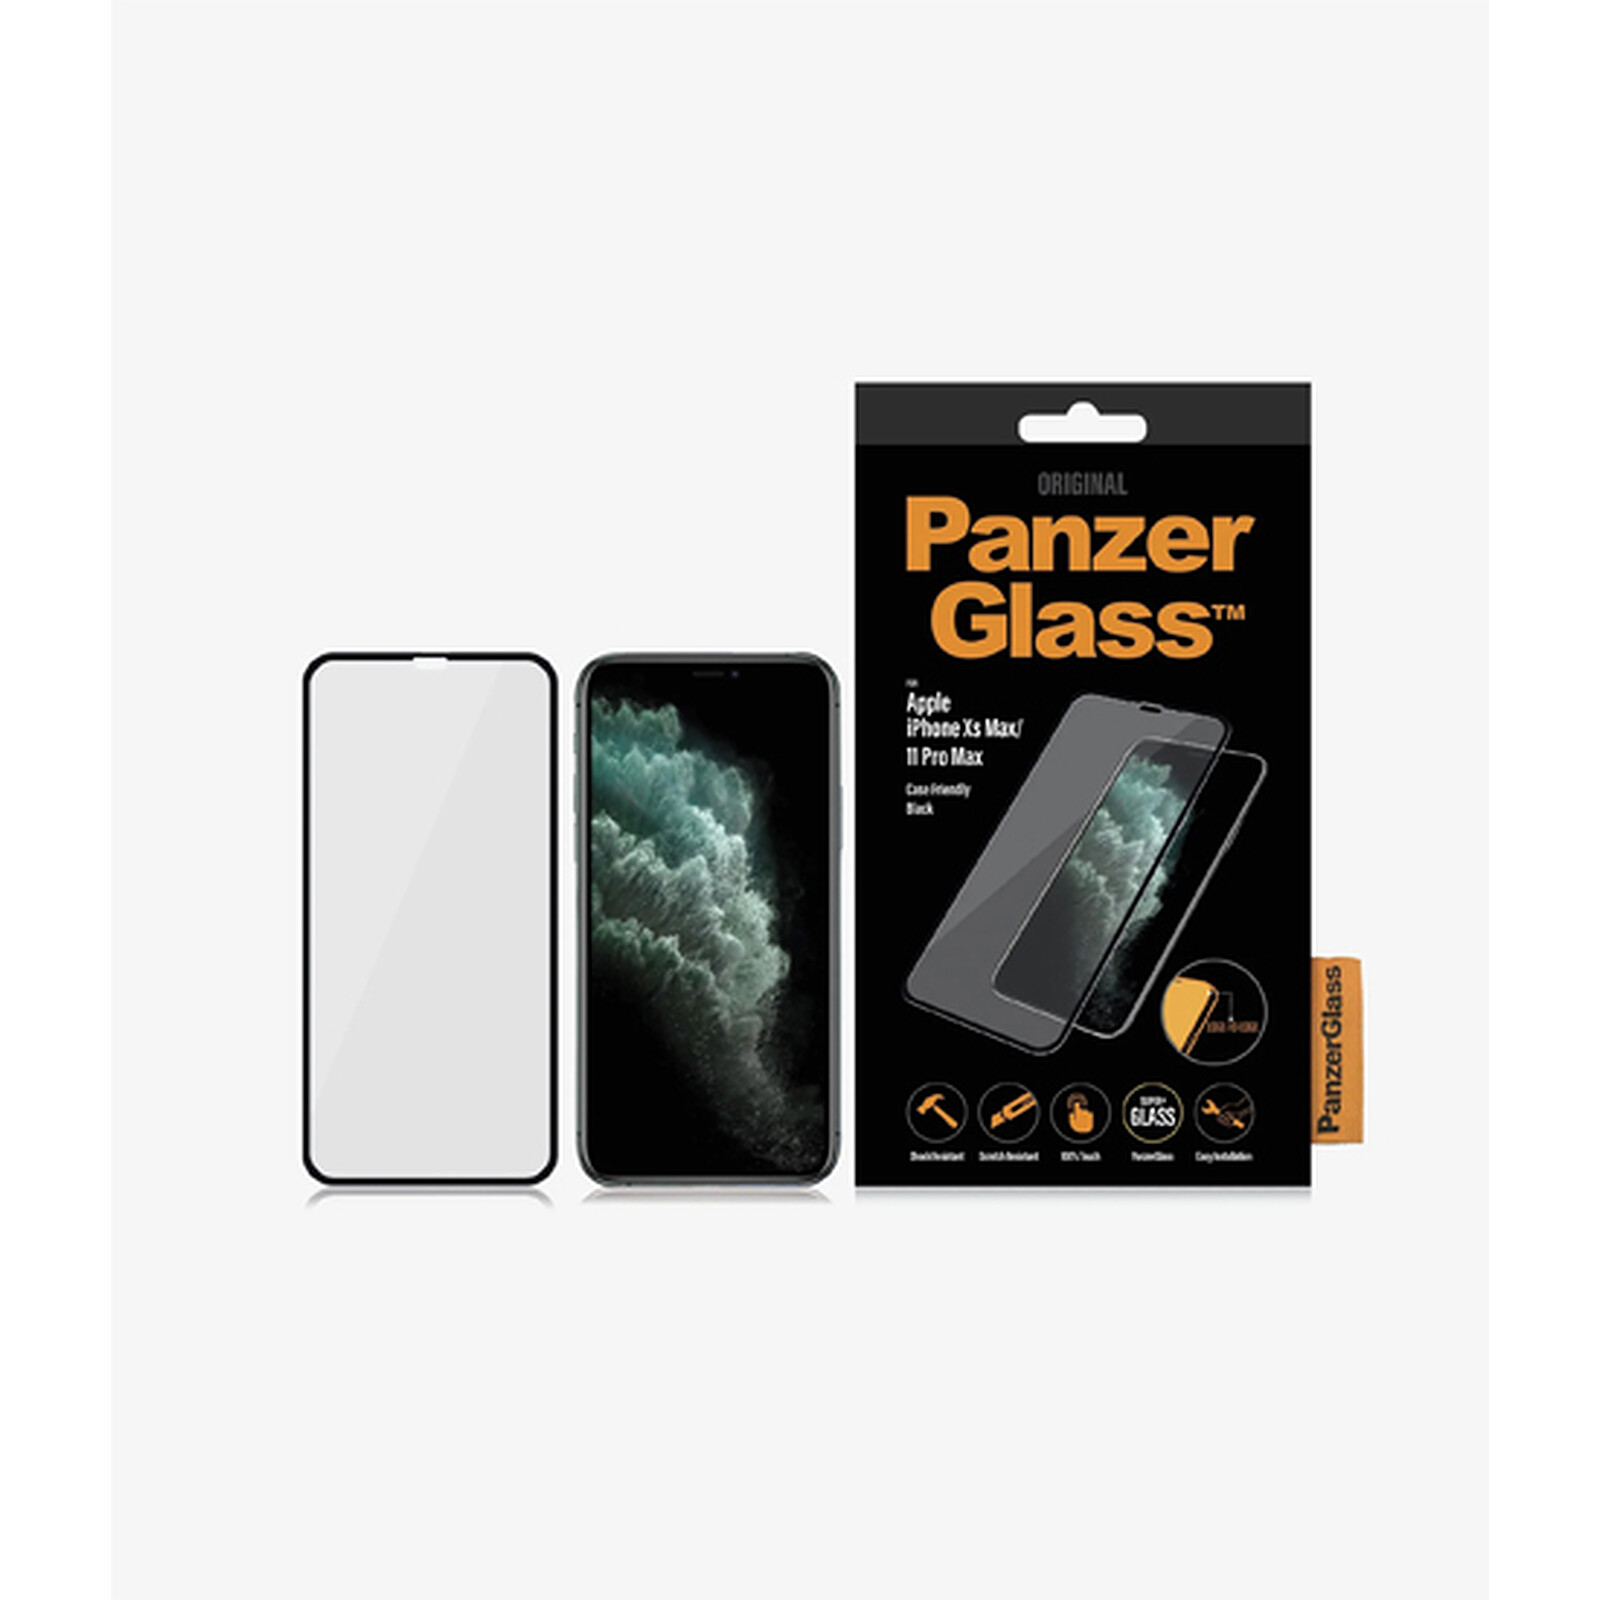 PanzerGlass Case Friendly - Protection d'écran - verre trempé pour iPhone  11 Pro Max, XS Max - transparent Pas Cher